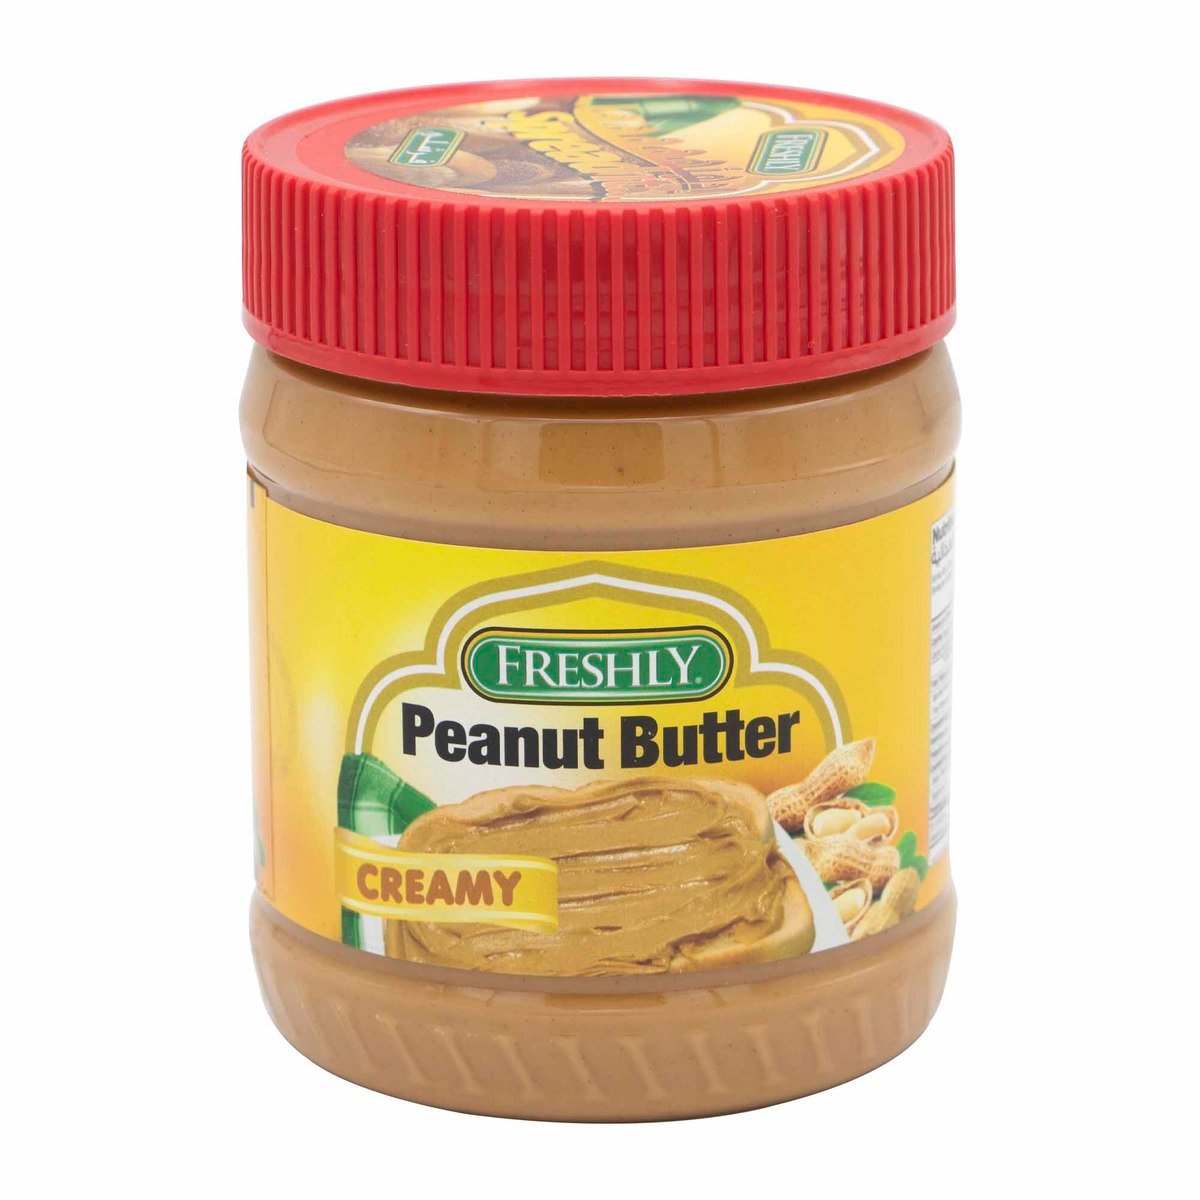 اشتري قم بشراء فرشلي زبدة الفول السوداني الكريمية 340 جم Online at Best Price من الموقع - من لولو هايبر ماركت Peanut Butter في السعودية